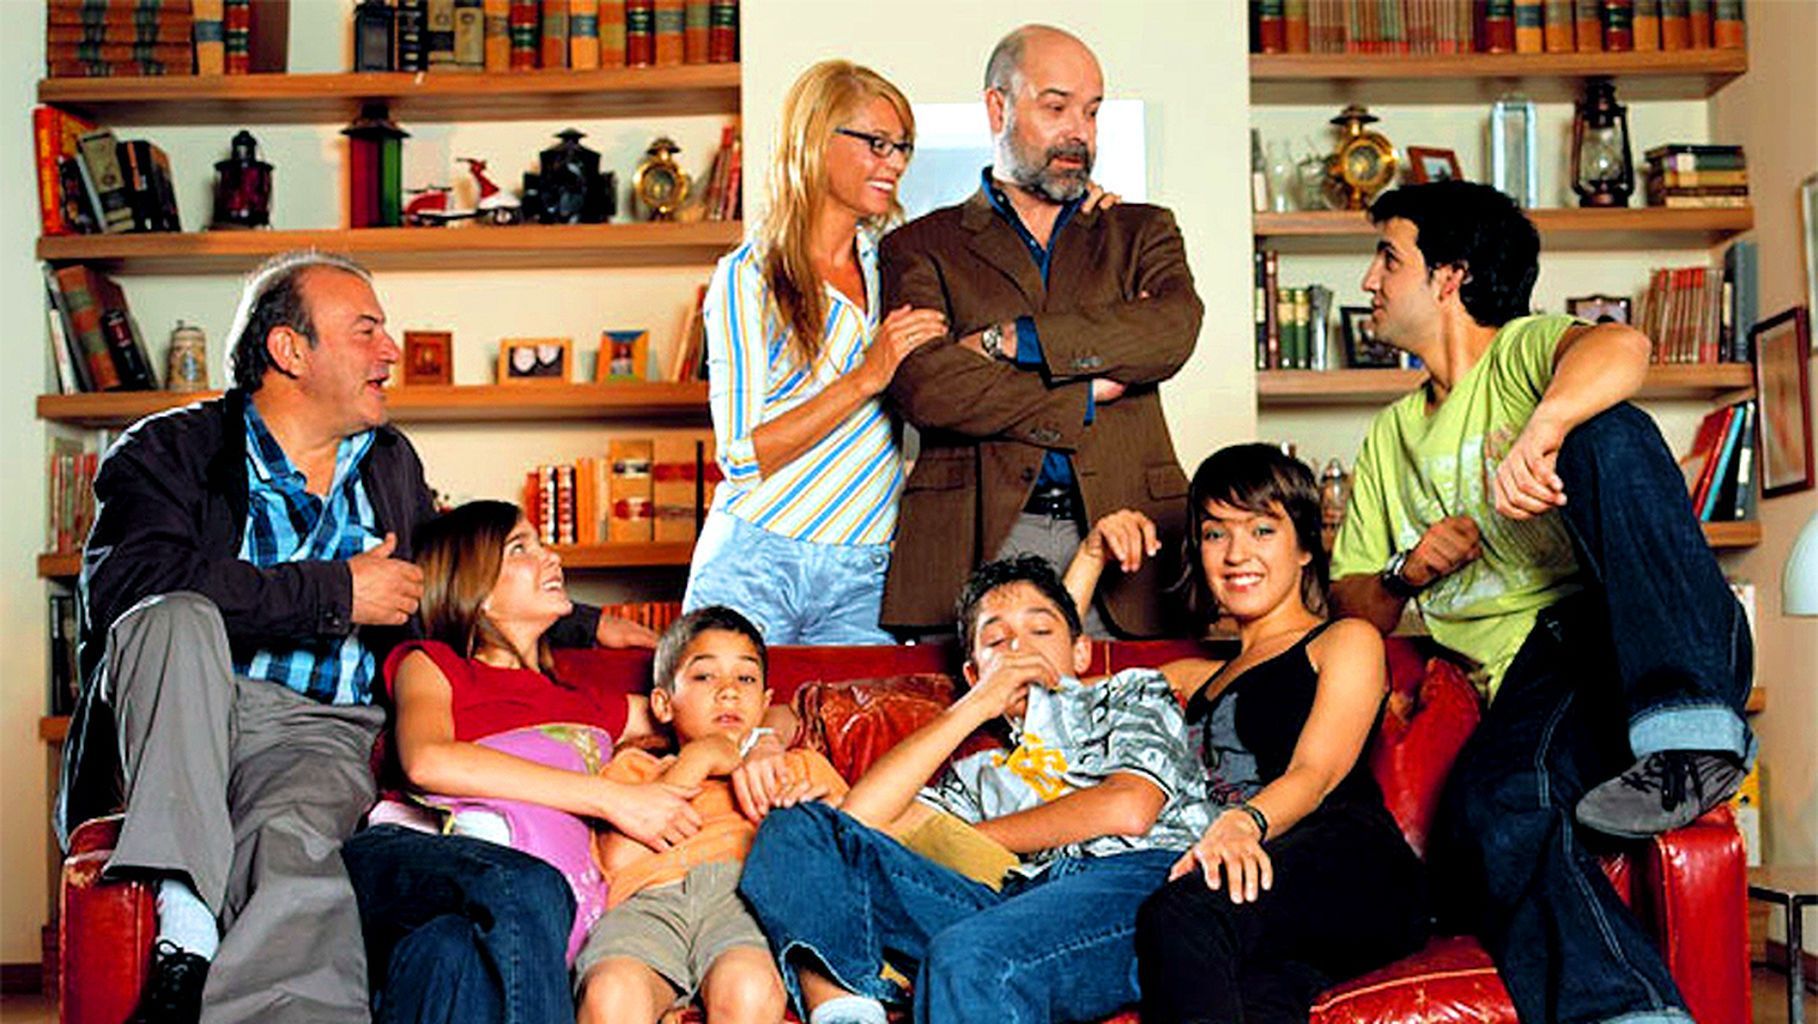 De estrella en ‘Los Serrano’ con Antonio Resines a irse a vivir como ricos a Argentina por 3.800 euros al mes